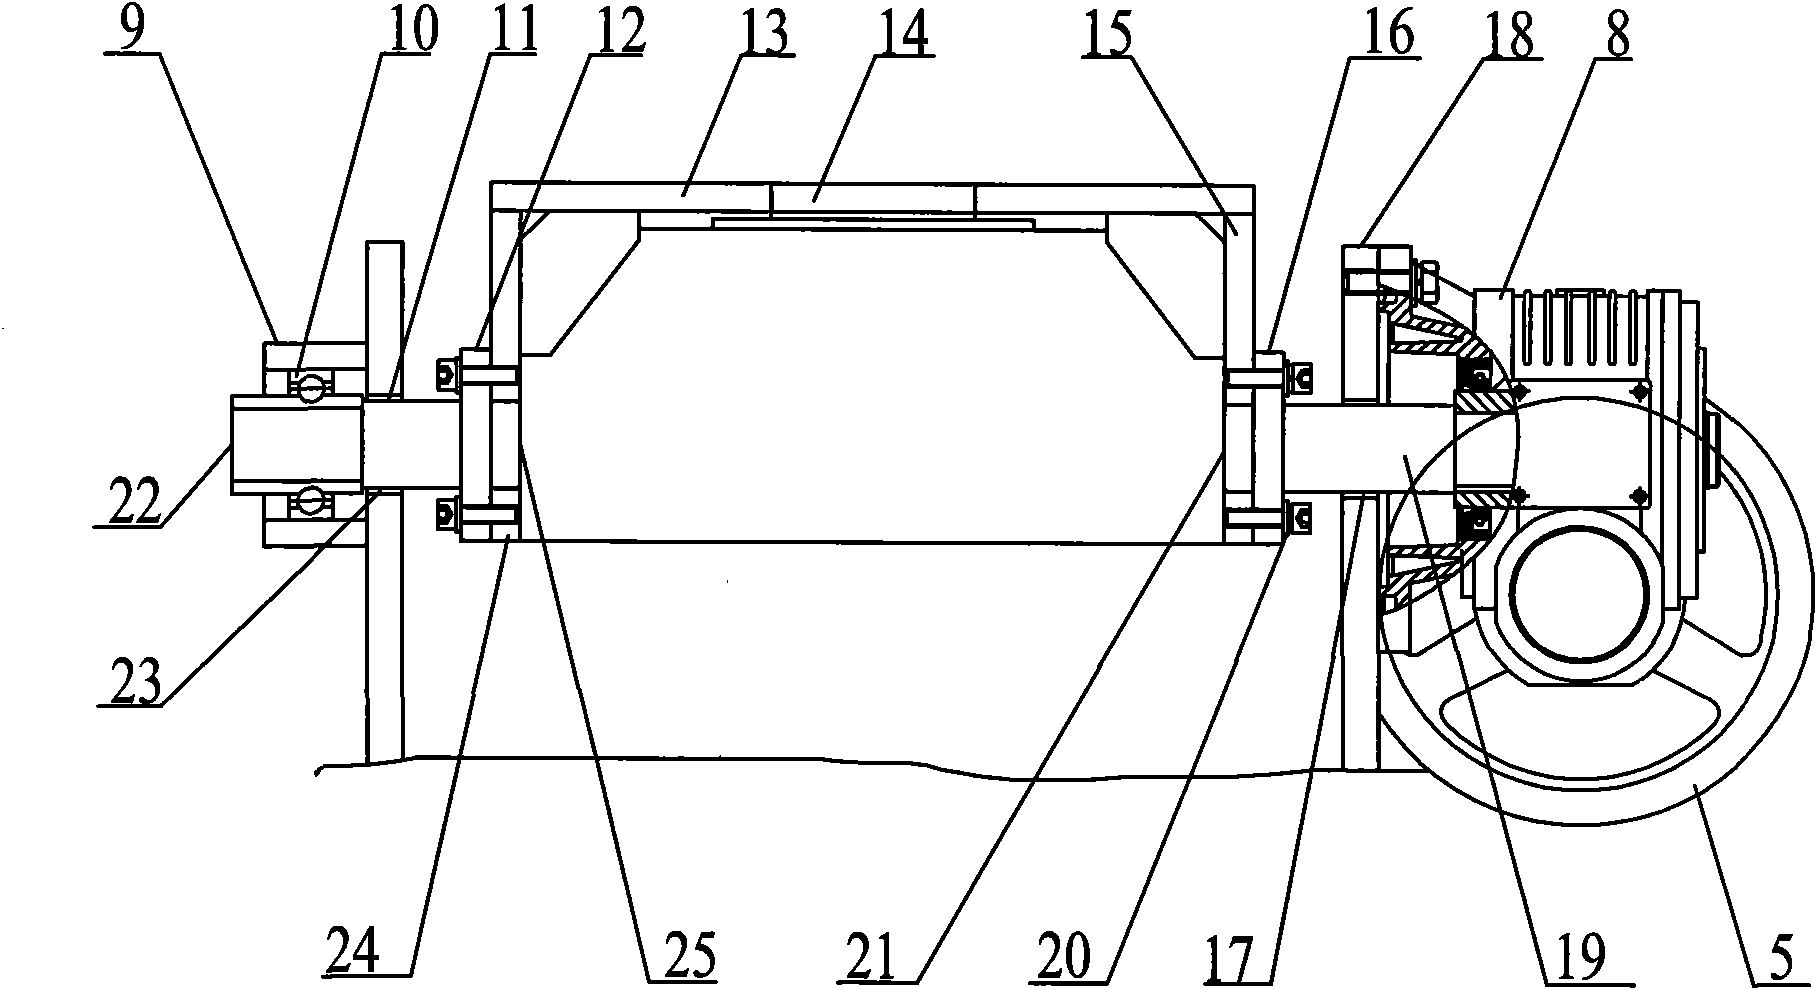 Dumping mechanism of welding positioner